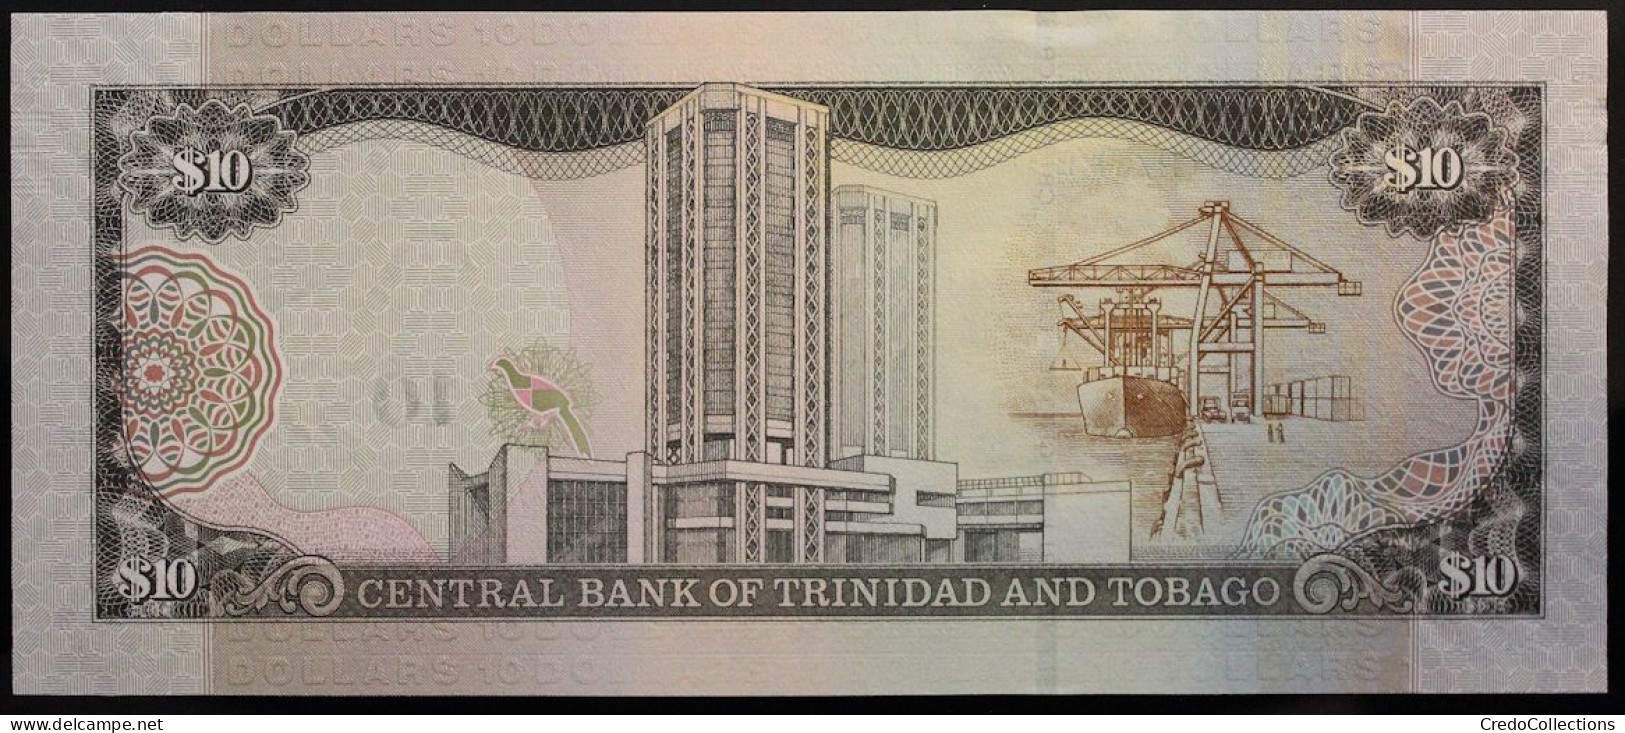 Trinitad Et Tobago - 10 Dollars - 2016 - PICK 57b - NEUF - Trindad & Tobago